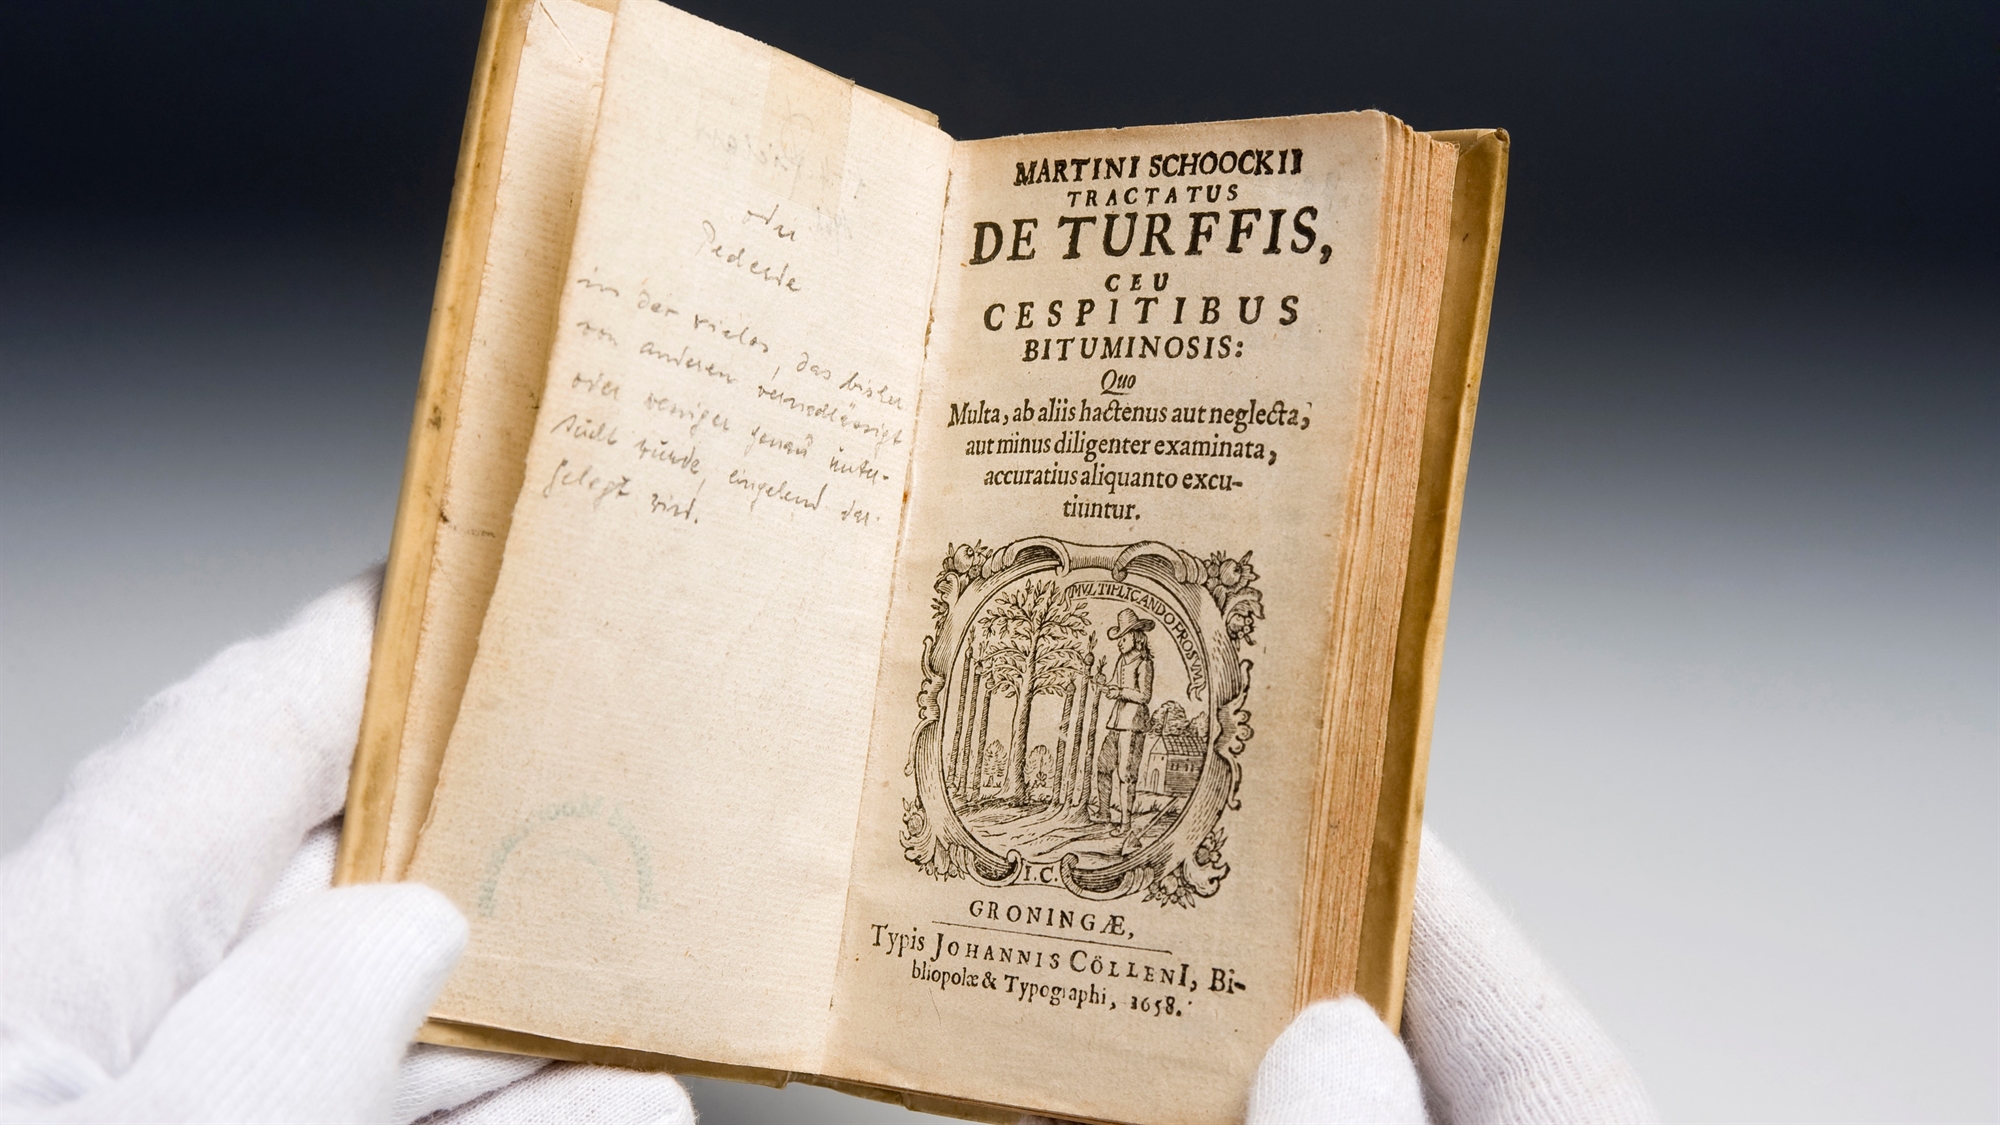 Archiviertes Buch zu Torf aus dem Archiv des Emsland Moormuseums